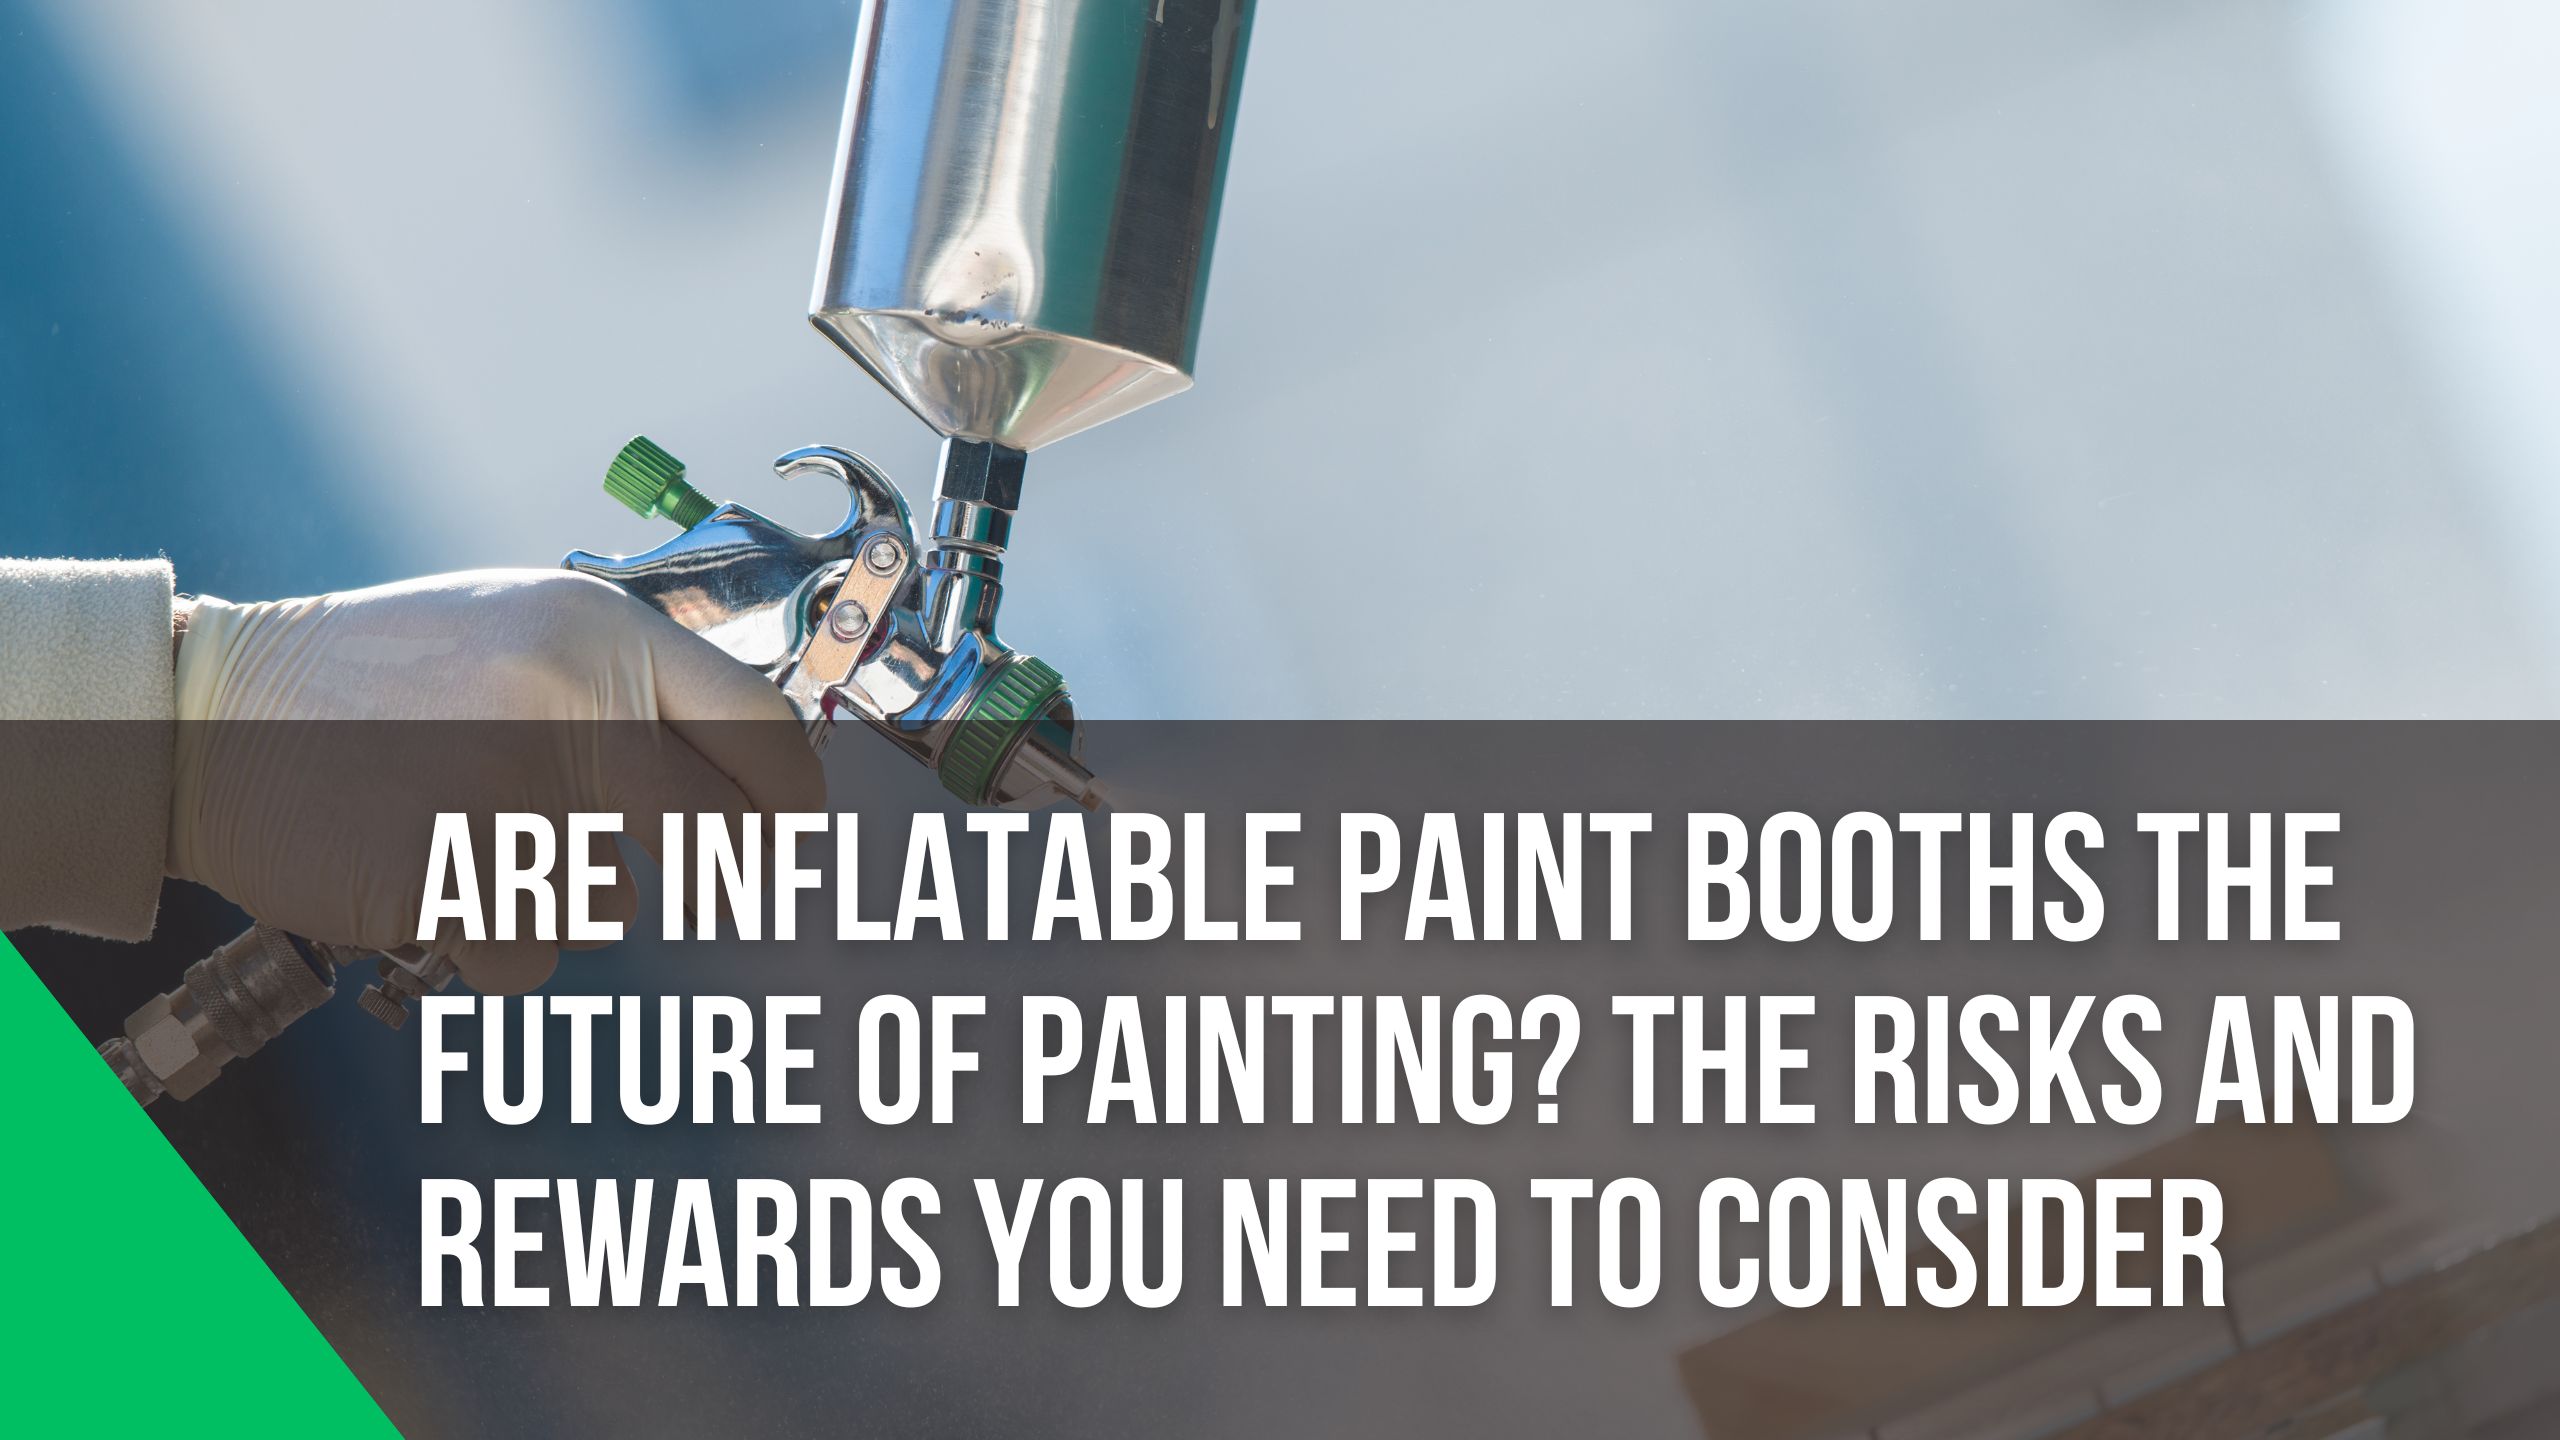 ventajas y desventajas de la cabina de pintura inflable